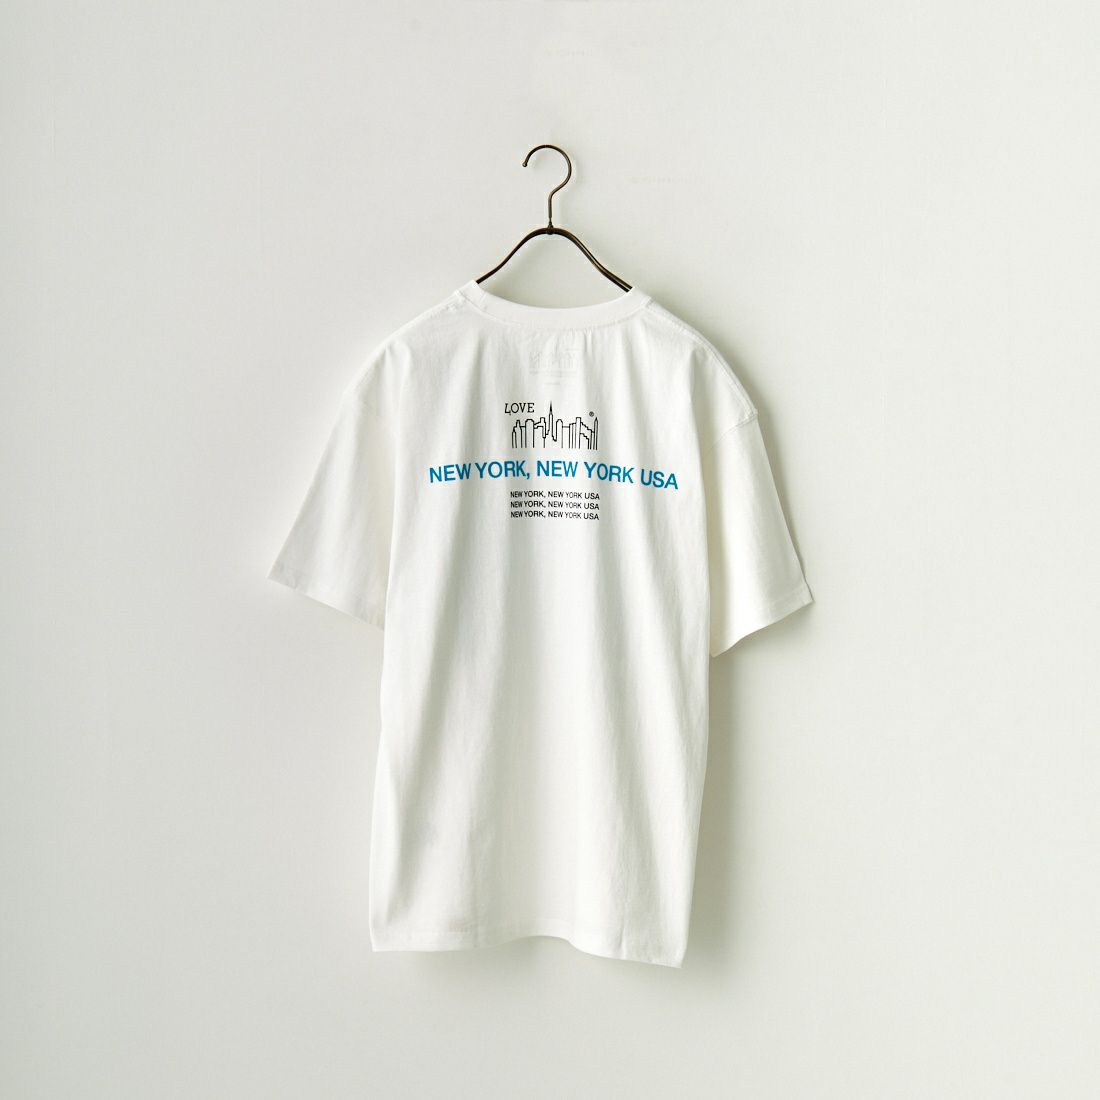 MANHATTAN PORTAGE [マンハッタンポーテージ] ショートスリーブプリントTシャツ [23FW-MP-M550] 01 WHITE